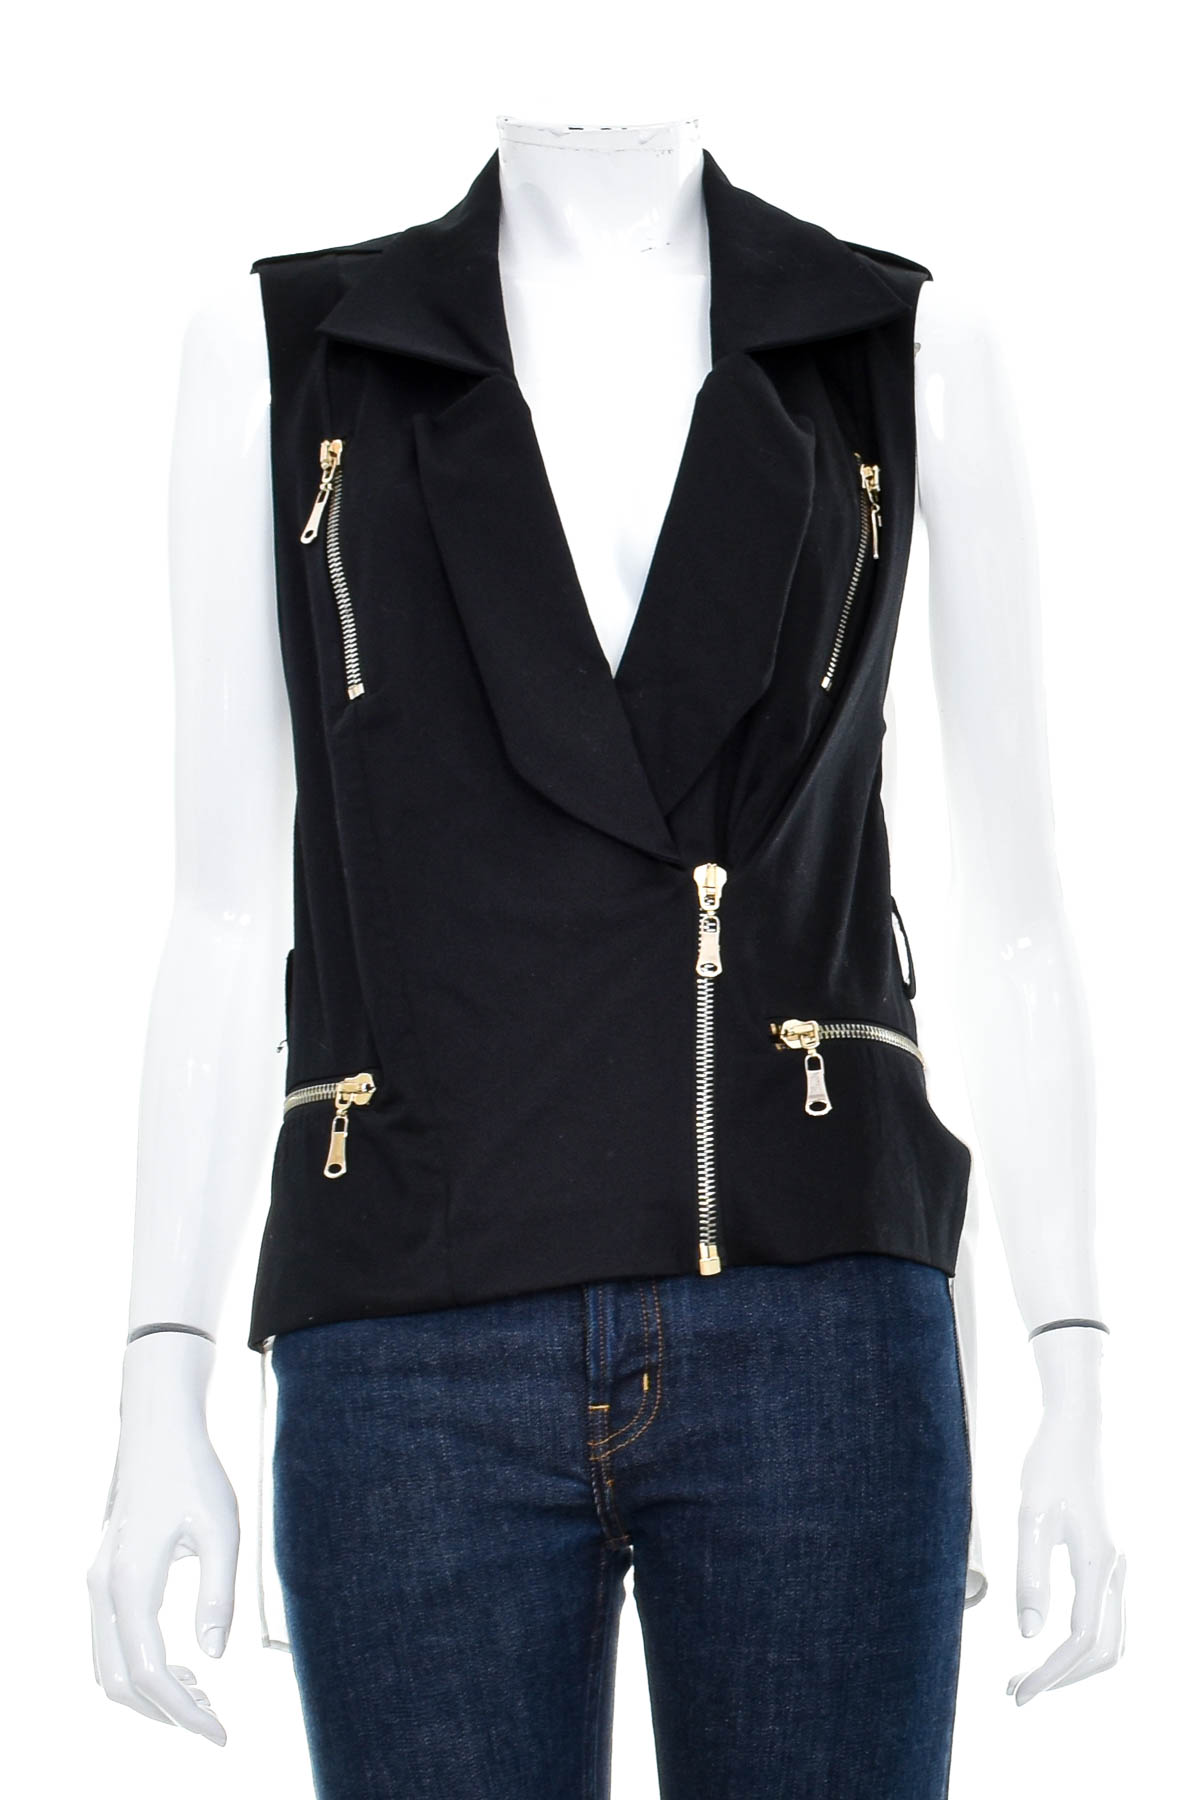 Women's vest - Love'n Fashion PARIS - 0